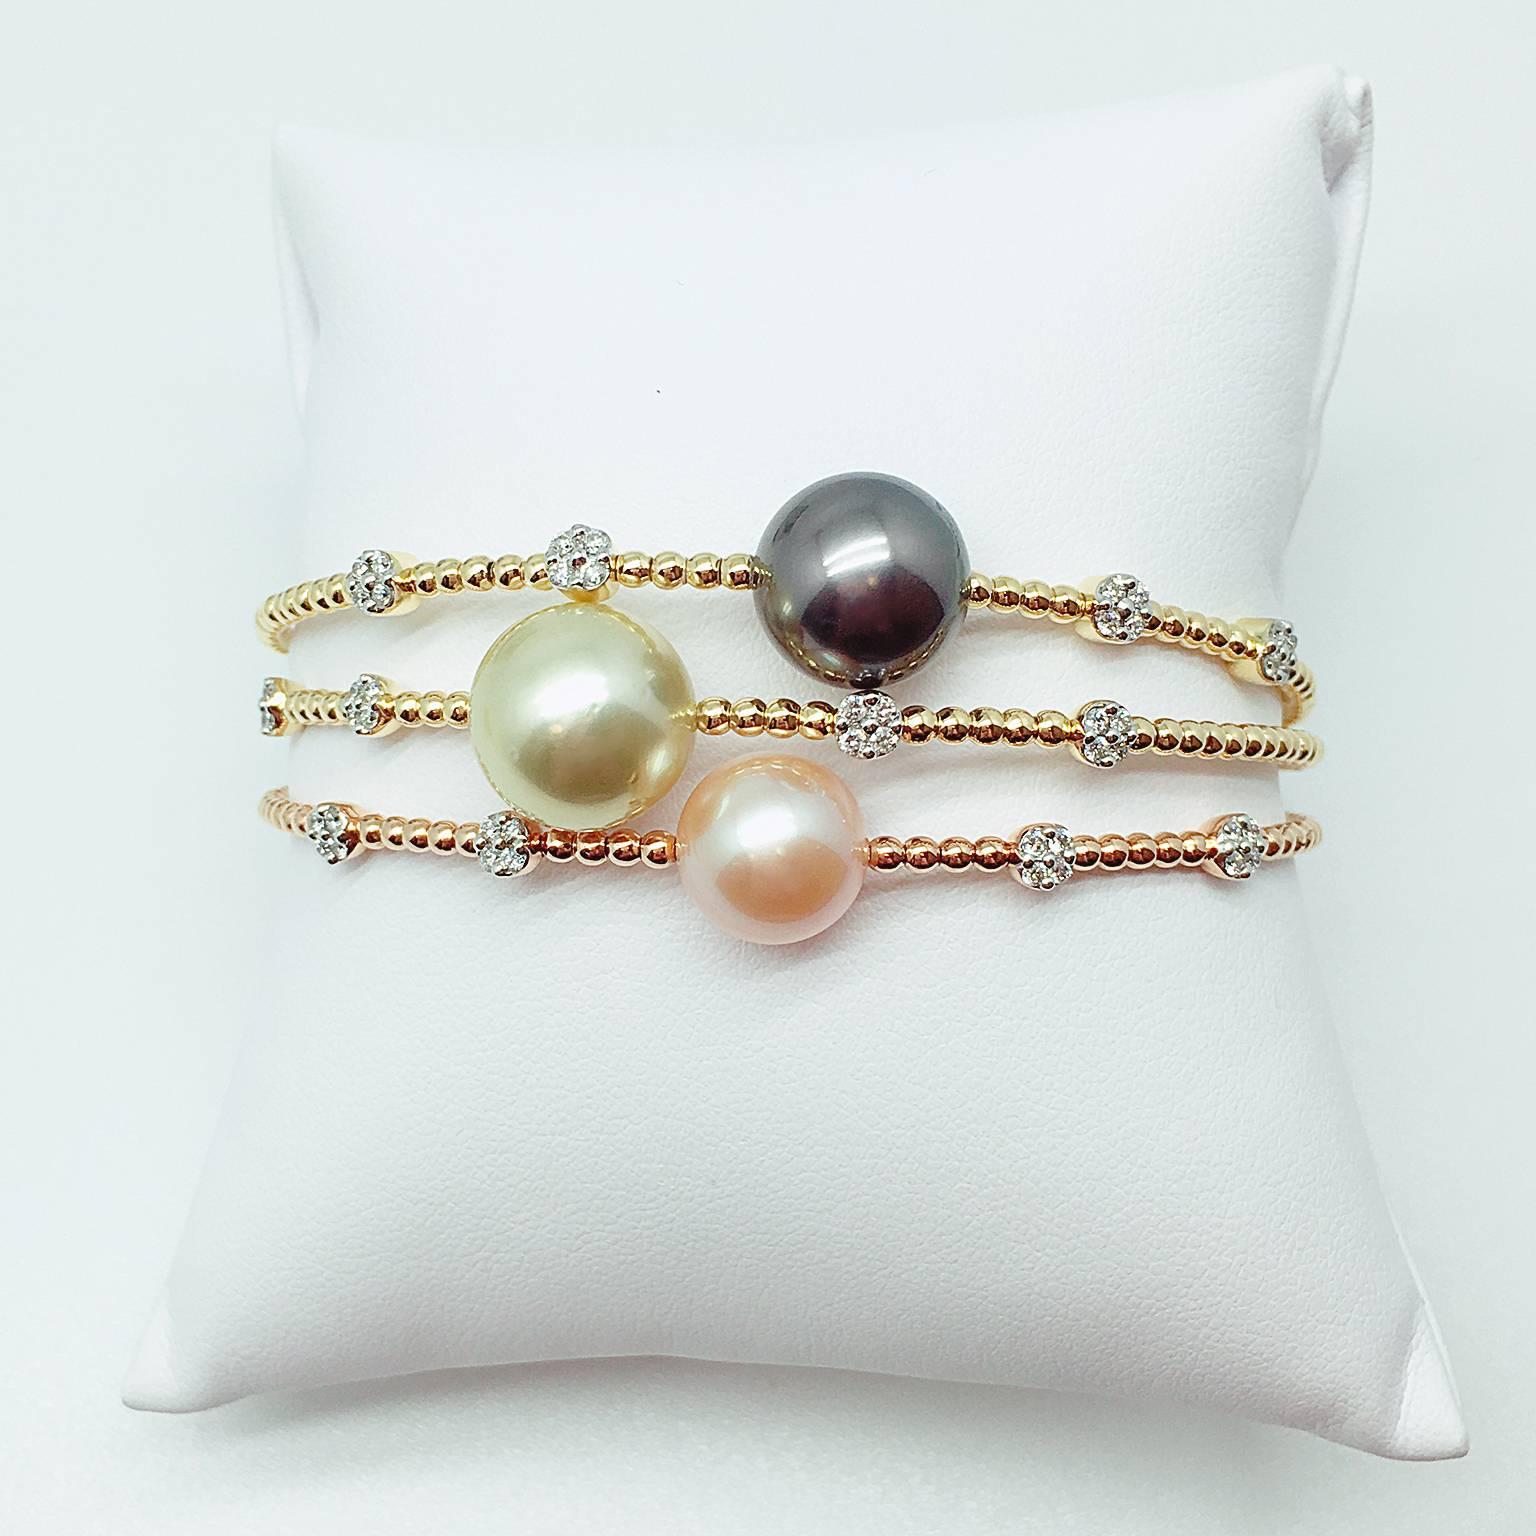 Perle de Tahiti : 11,8 mm
Diamant blanc : 0,19 carat
Serti en or jaune 18K

Des bracelets assortis avec une perle or southsea et une perle d'eau douce sont également disponibles.